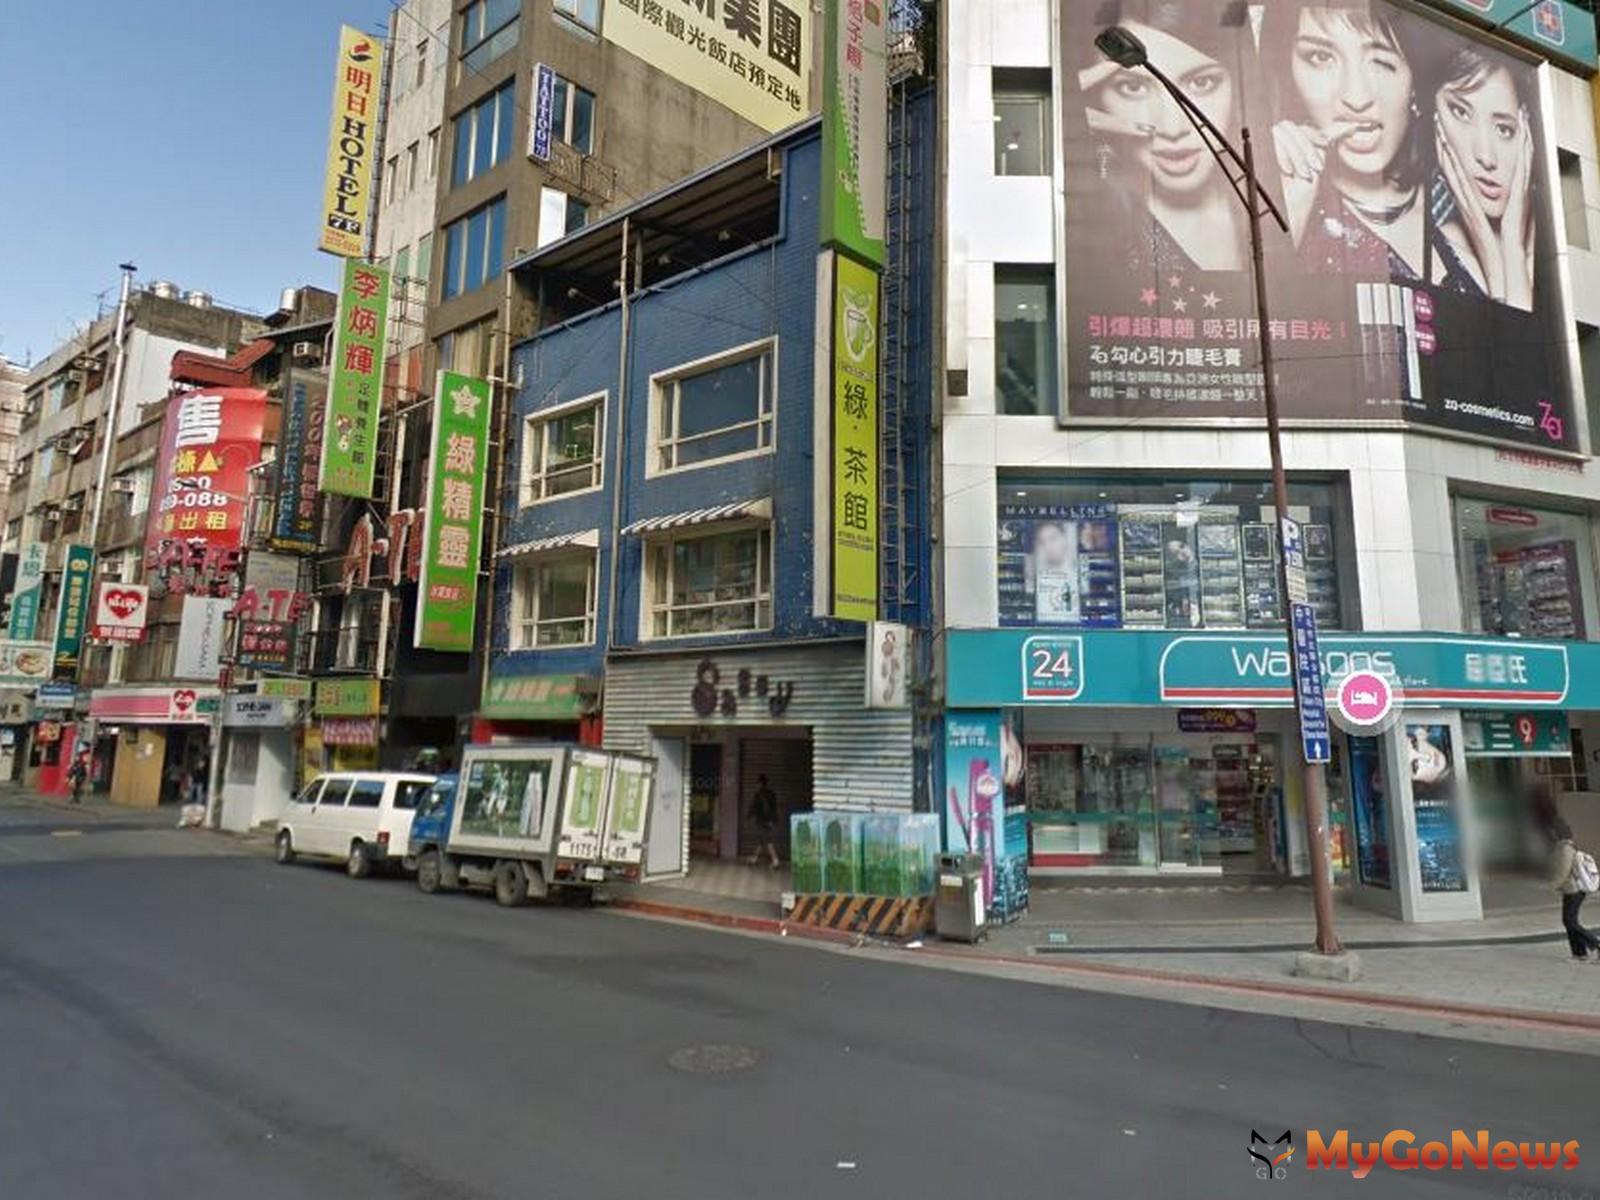 根據最新實價揭露資料顯示，台北市成都路19號靠近捷運站6號出口旁的店面，16.87坪月租達30萬元，單價每坪1.78萬元則創下2023年北市新高(圖片翻攝自Google Maps) MyGoNews房地產新聞 市場快訊